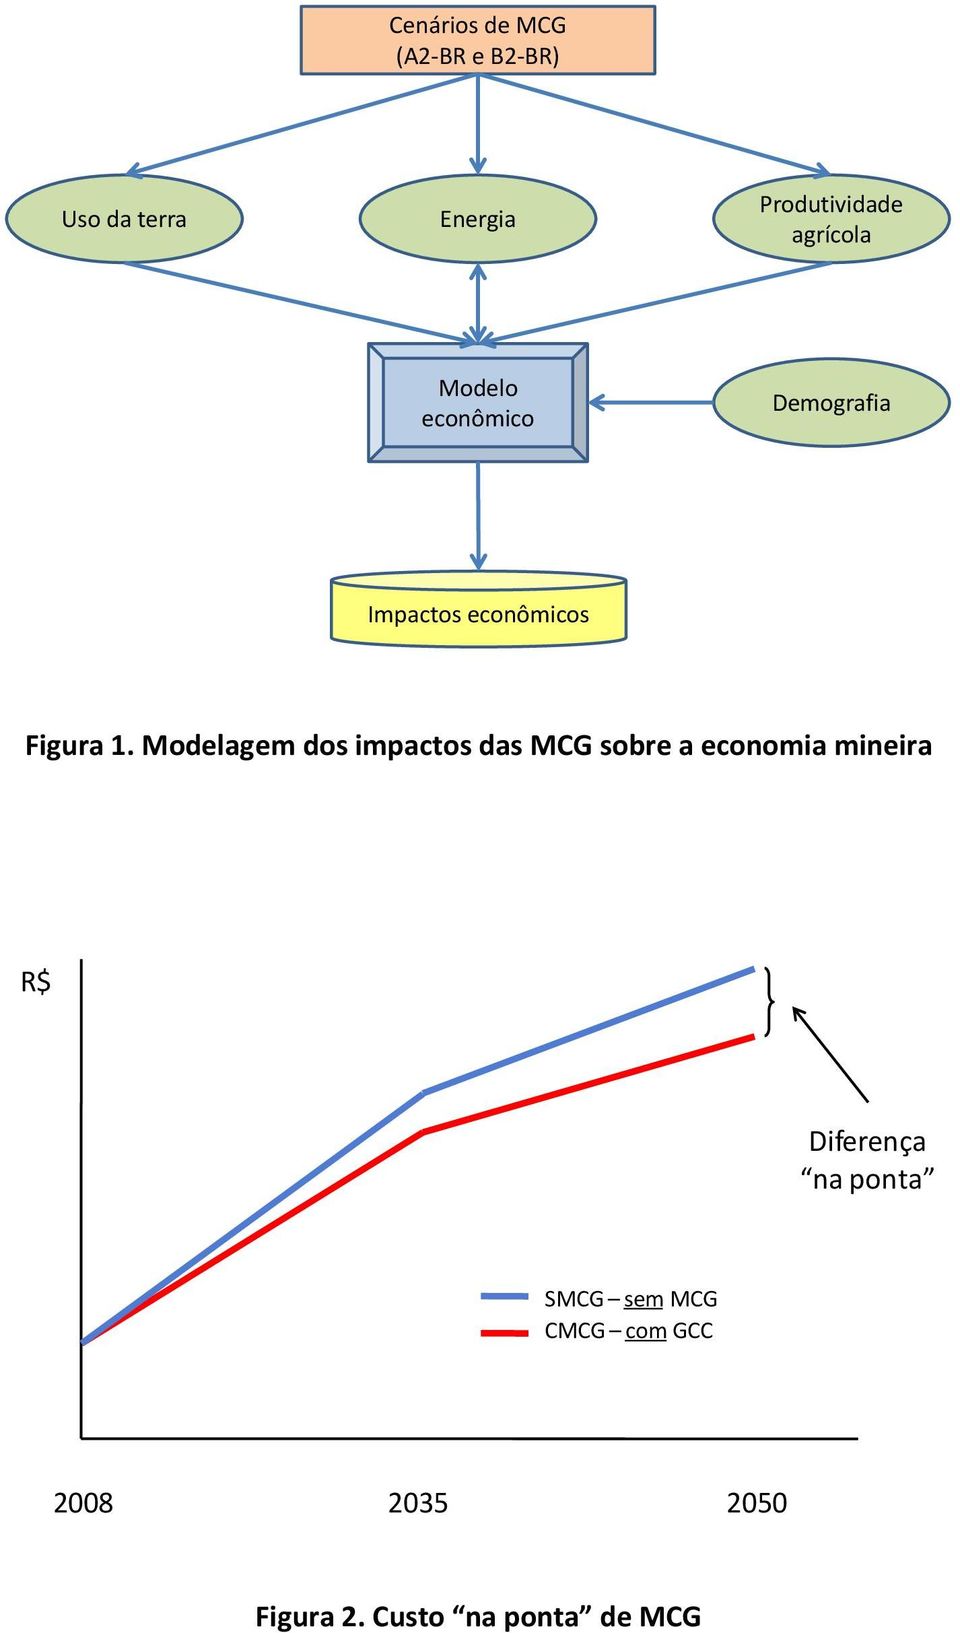 Modelagem dos impactos das MCG sobre a economia mineira R$ Diferença